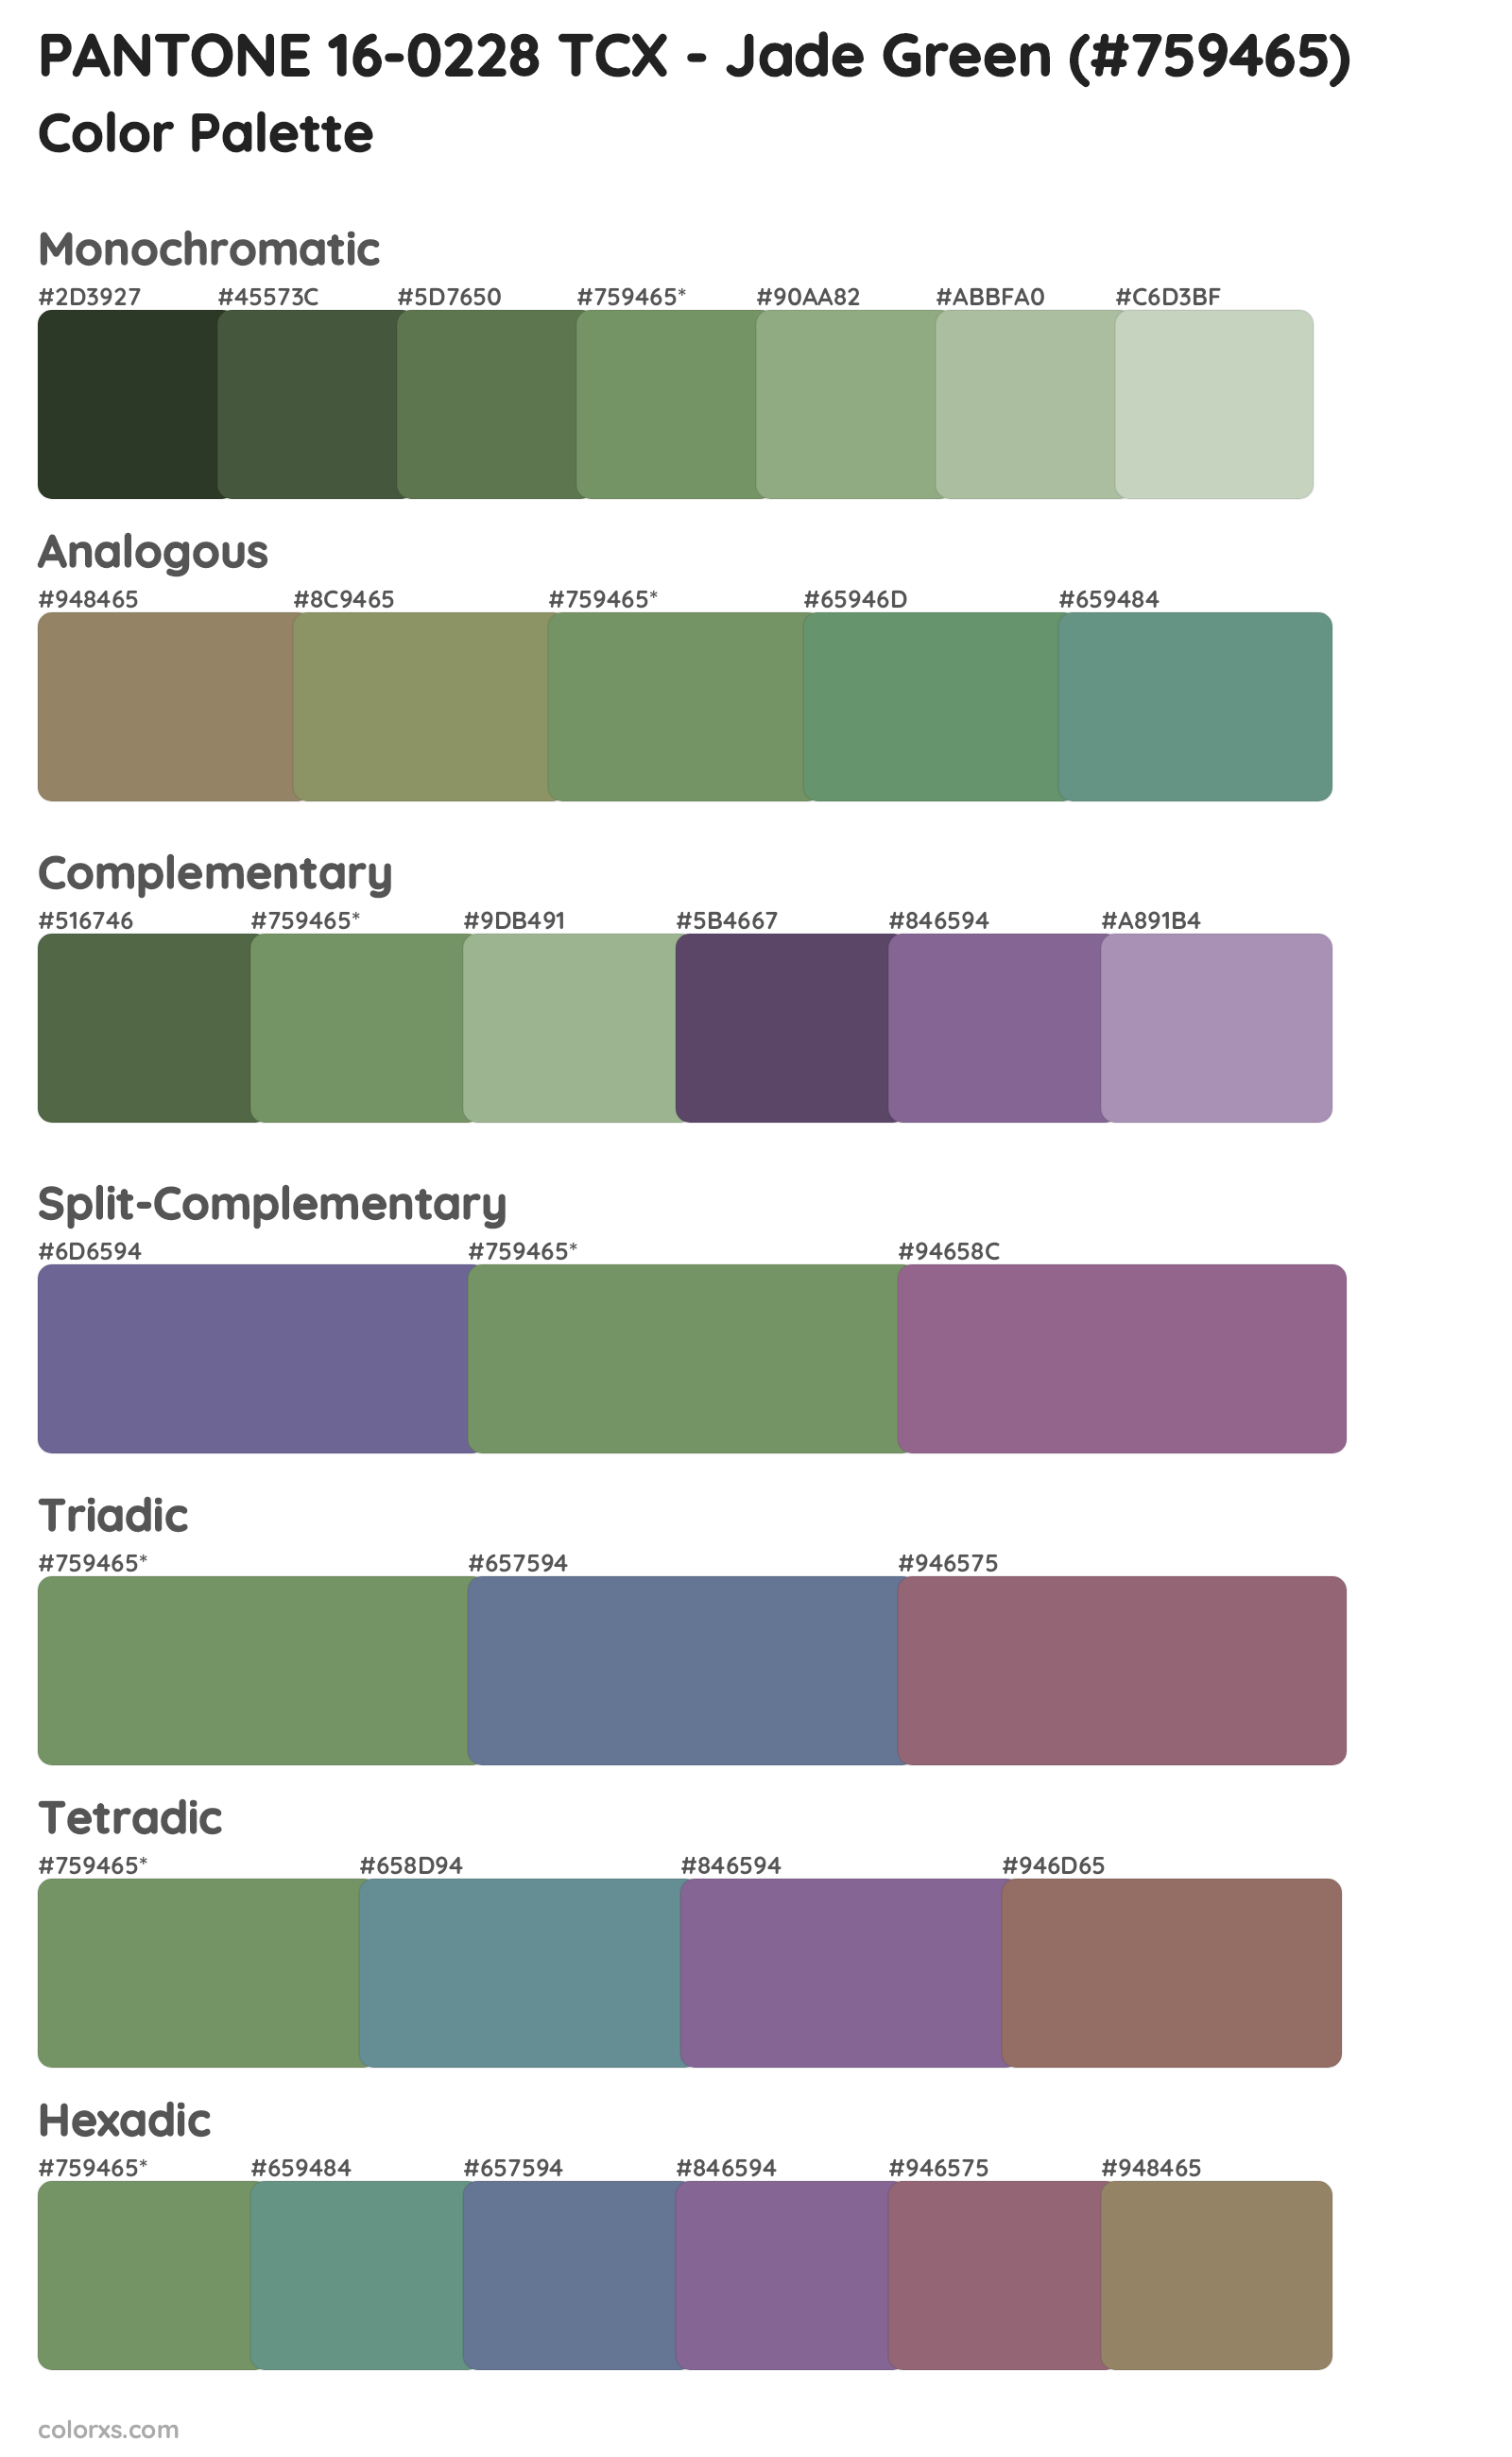 PANTONE 16-0228 TCX - Jade Green Color Scheme Palettes